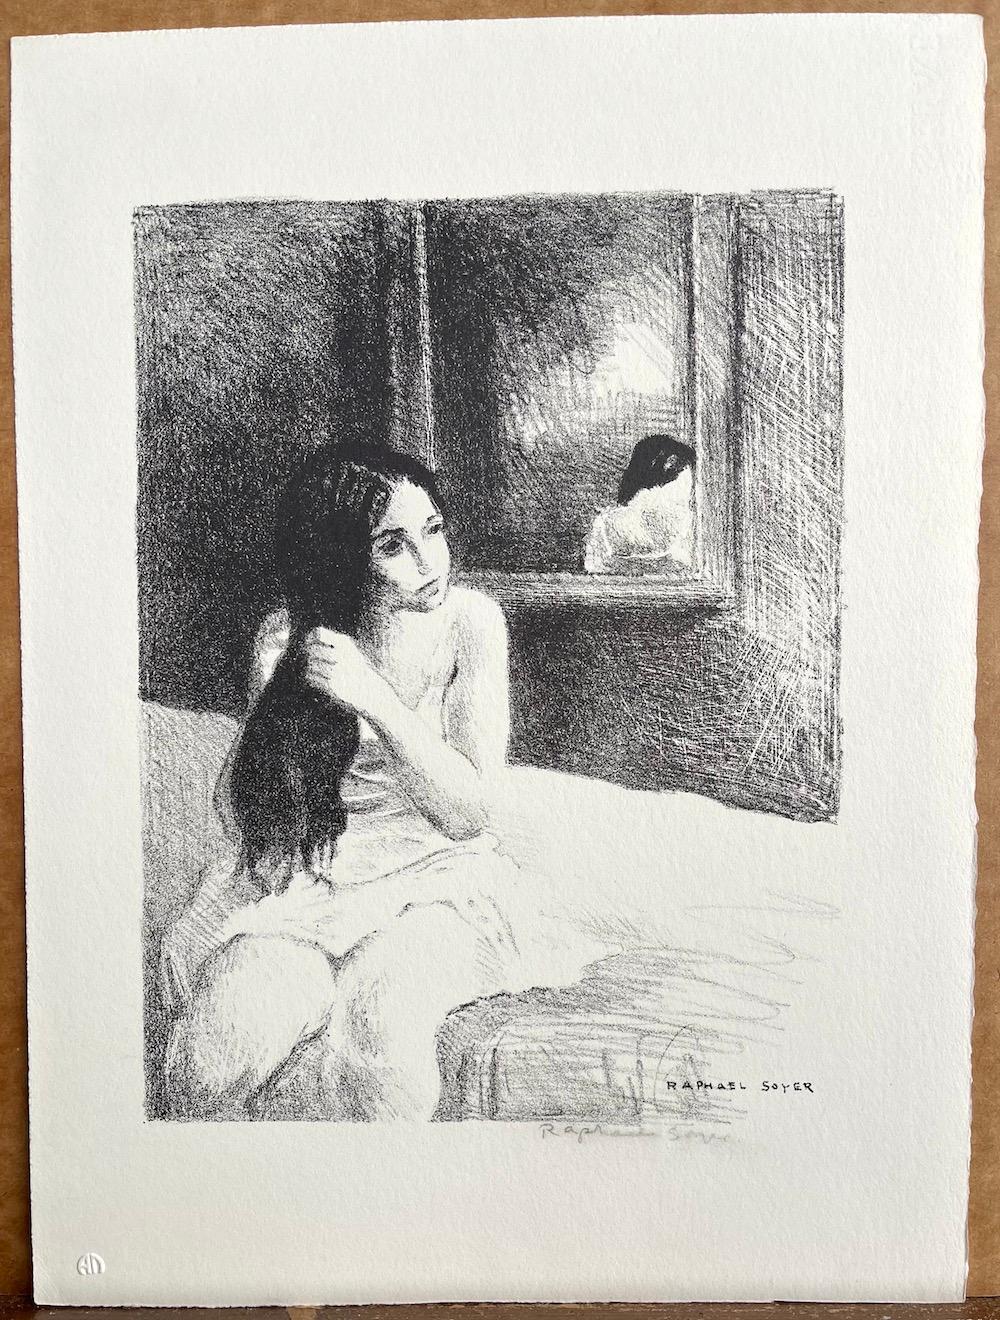 YOUNG WOMAN COMBING HER HAIR ist eine original handgezeichnete (nicht digital oder fotografisch reproduzierte) Lithographie in limitierter Auflage des Künstlers Raphael Soyer - russischer/amerikanischer Maler des Sozialrealismus, 1899-1987. Gedruckt